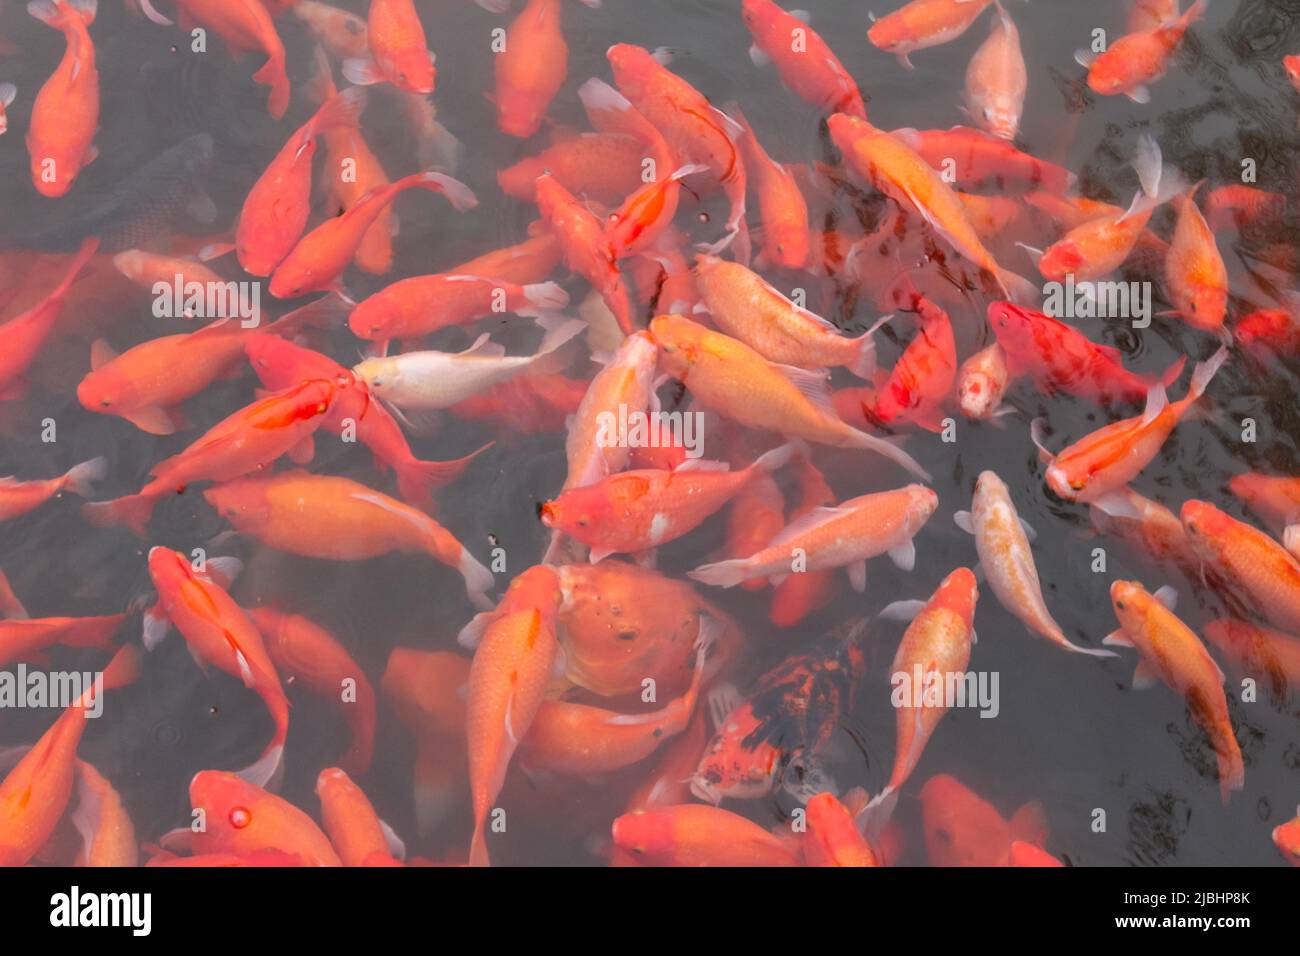 Red carp fish. Stock Photo